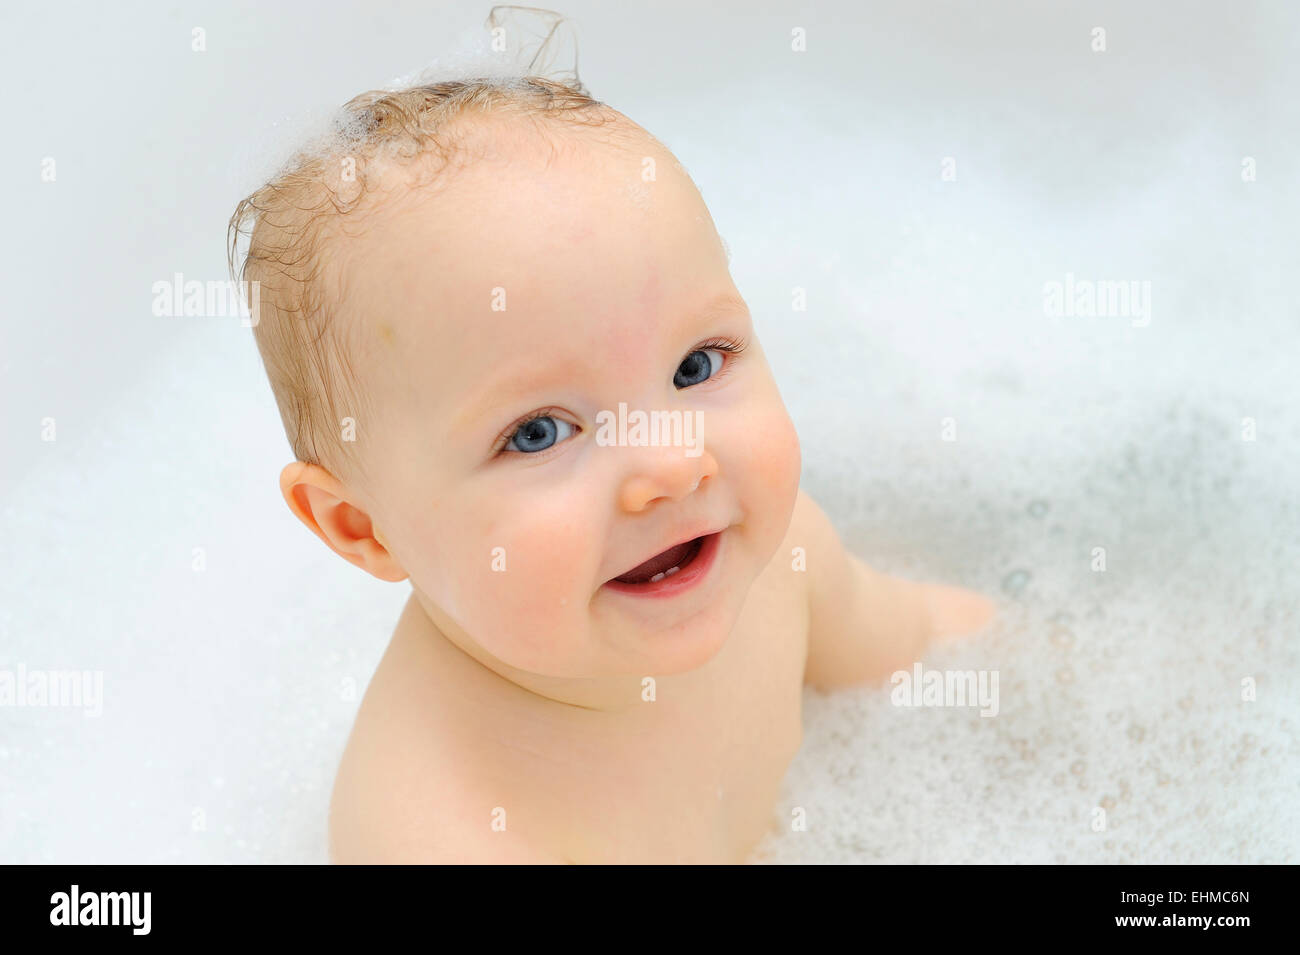 Petite fille, 11 mois, pendant le bain, Allemagne Banque D'Images